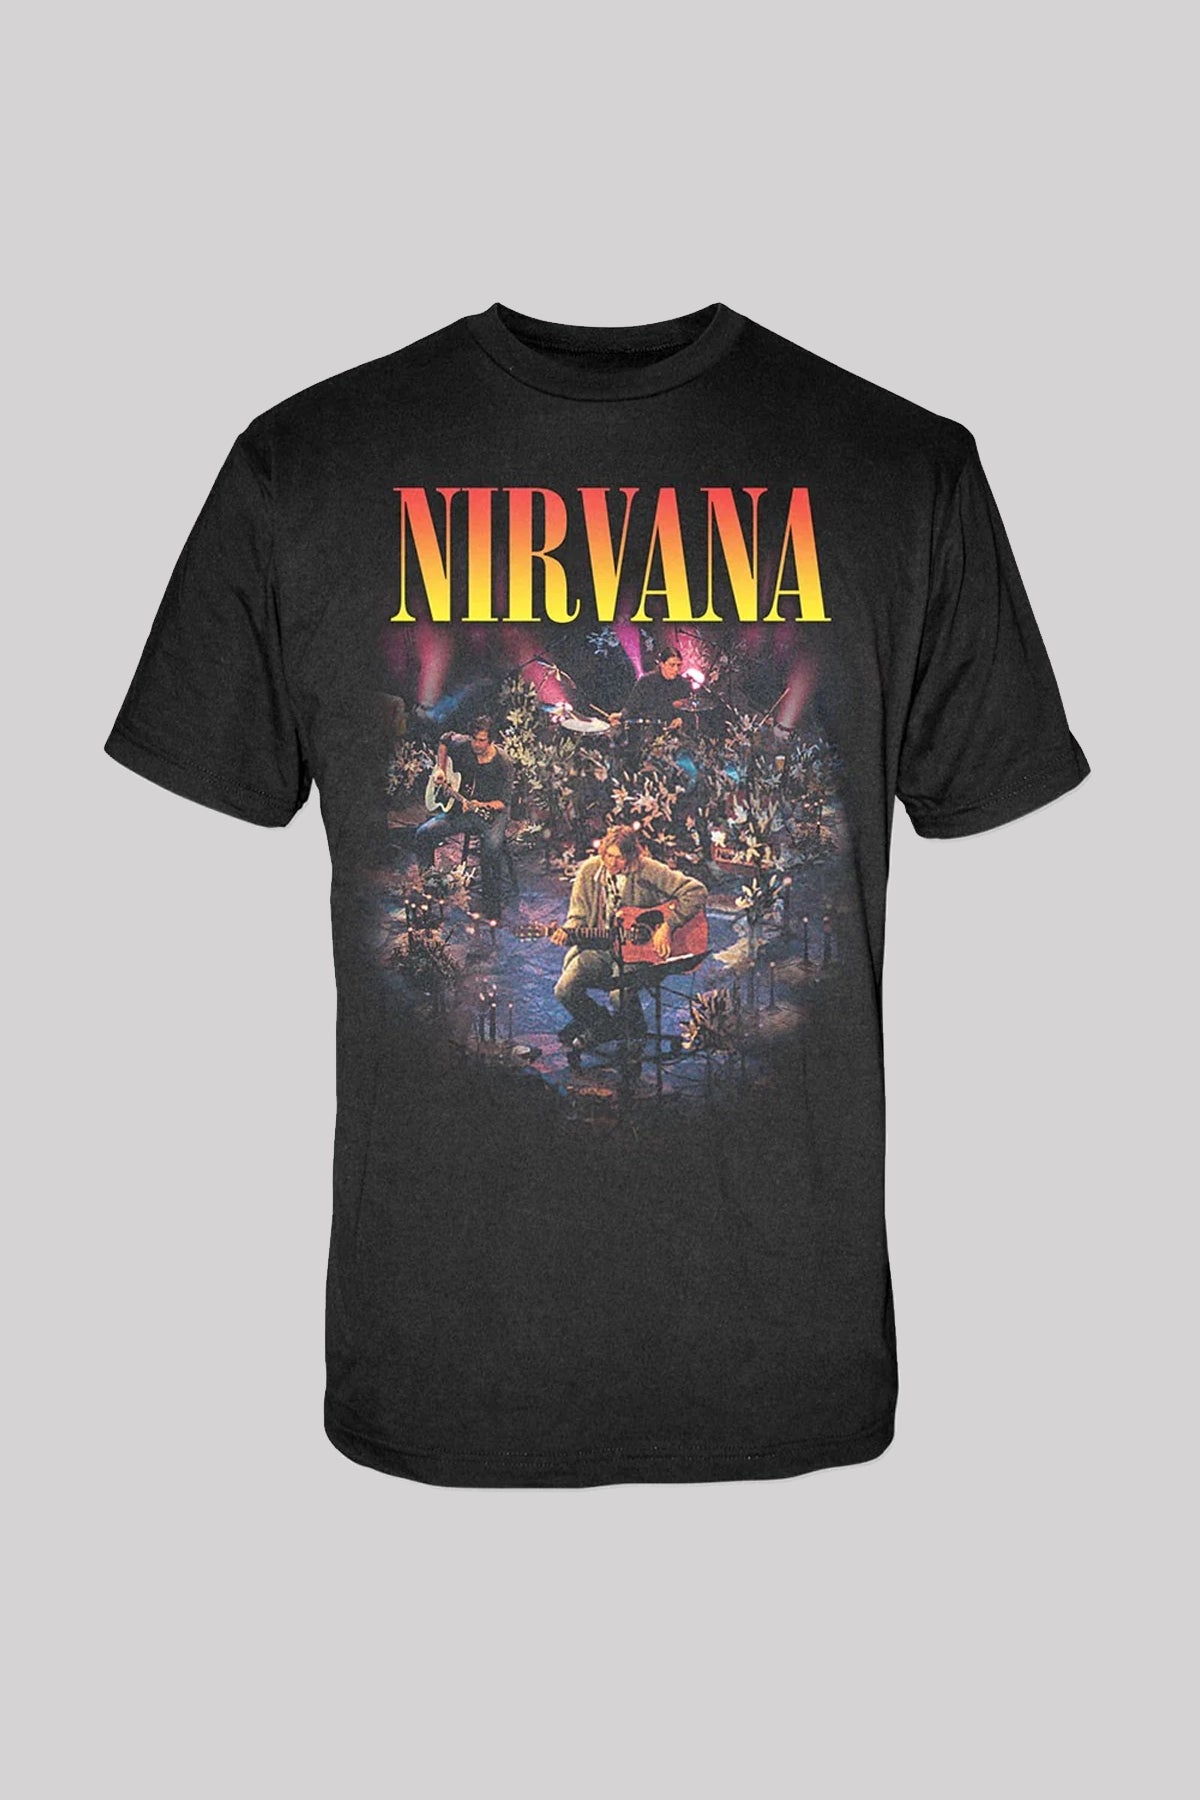 Nirvana Unisex T-Shirt, Unplugged Photo